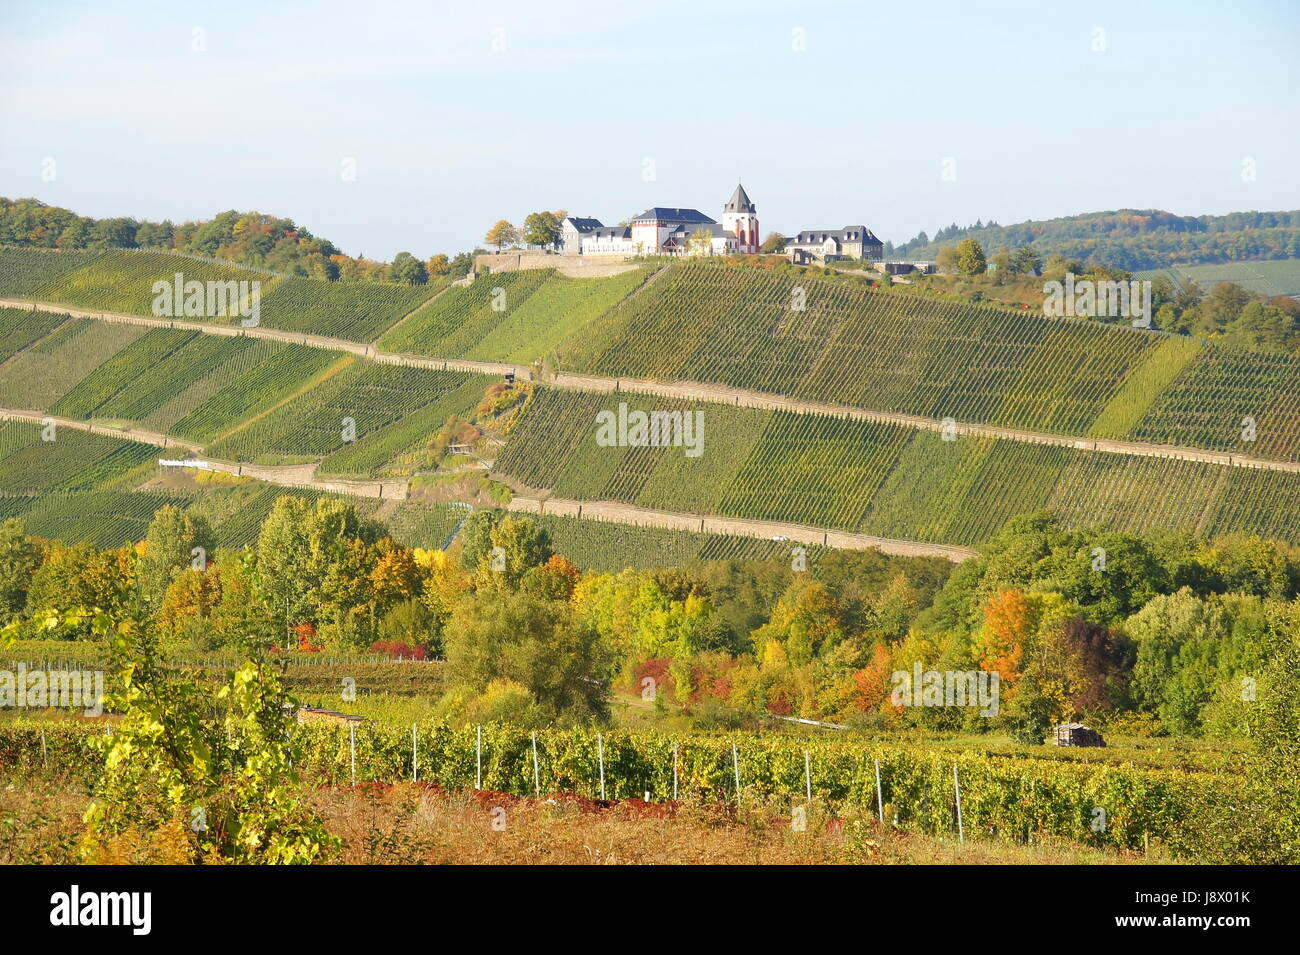 marienburg with vineyards Stock Photo